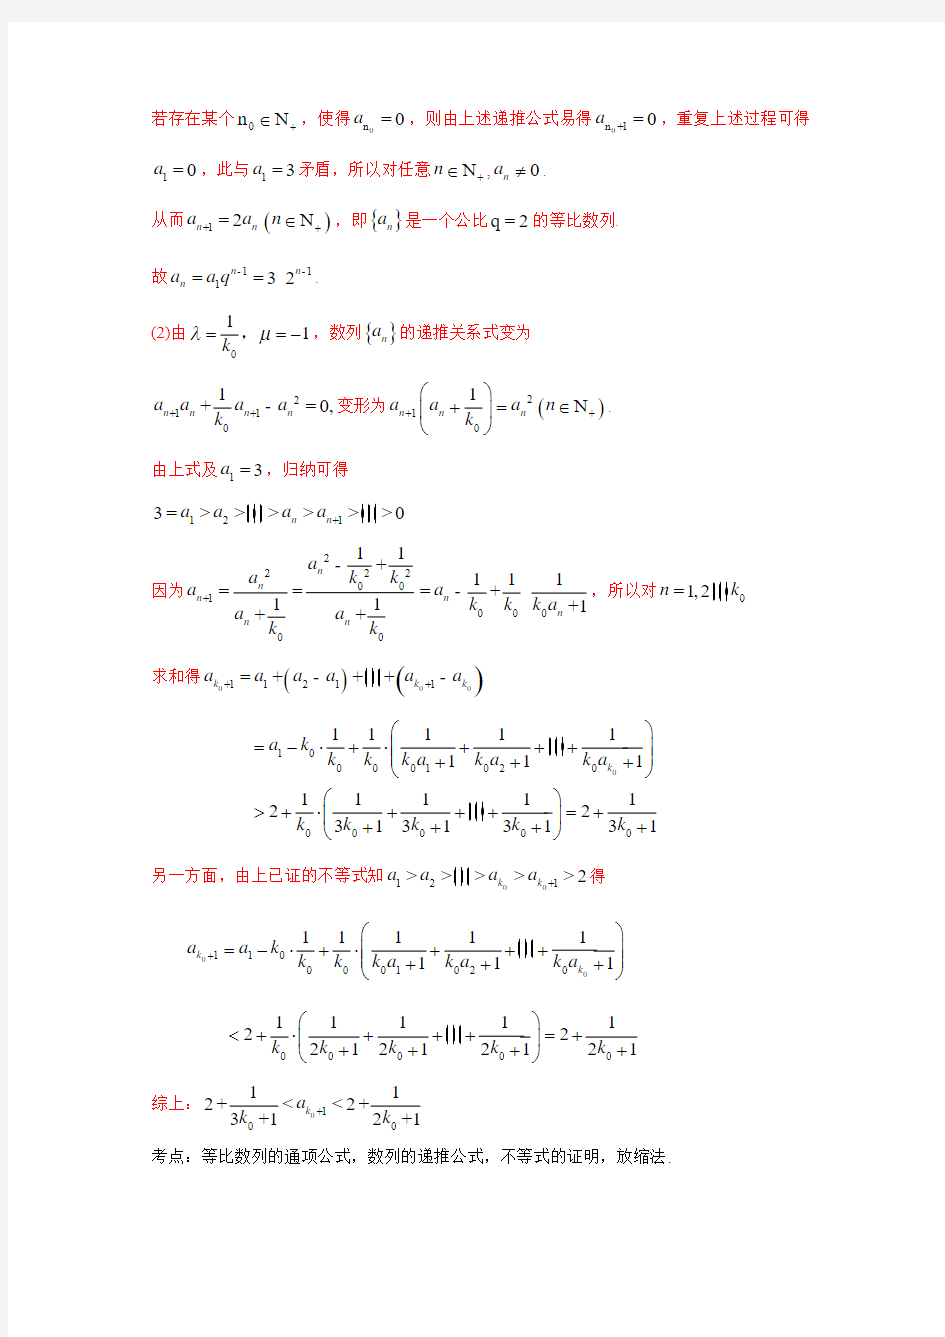 2015年高考理科数学试题汇编(含答案)：数列  大题